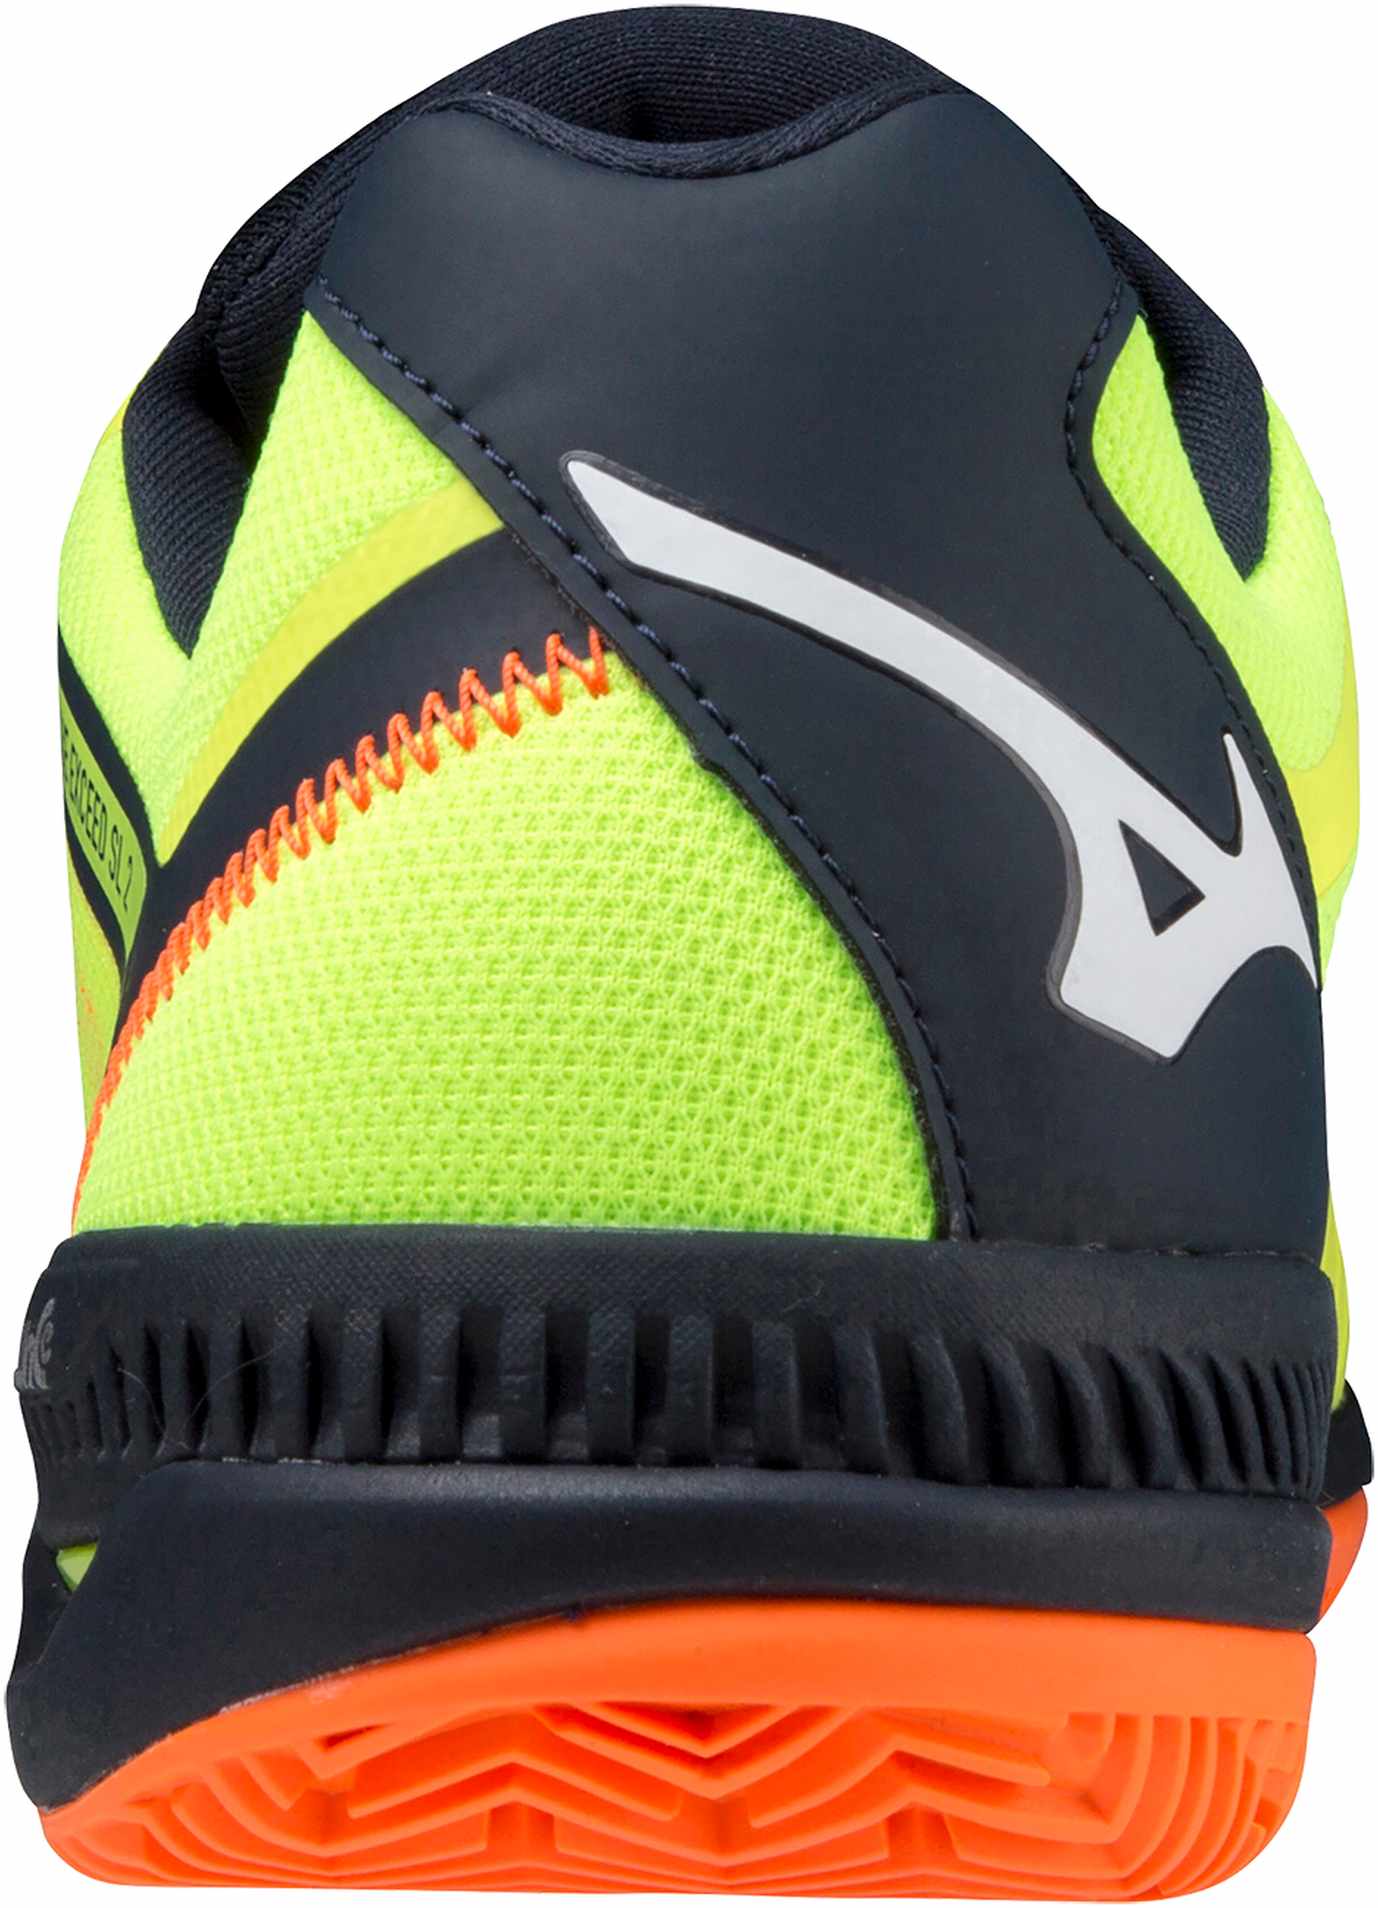 Unisex tennis shoes